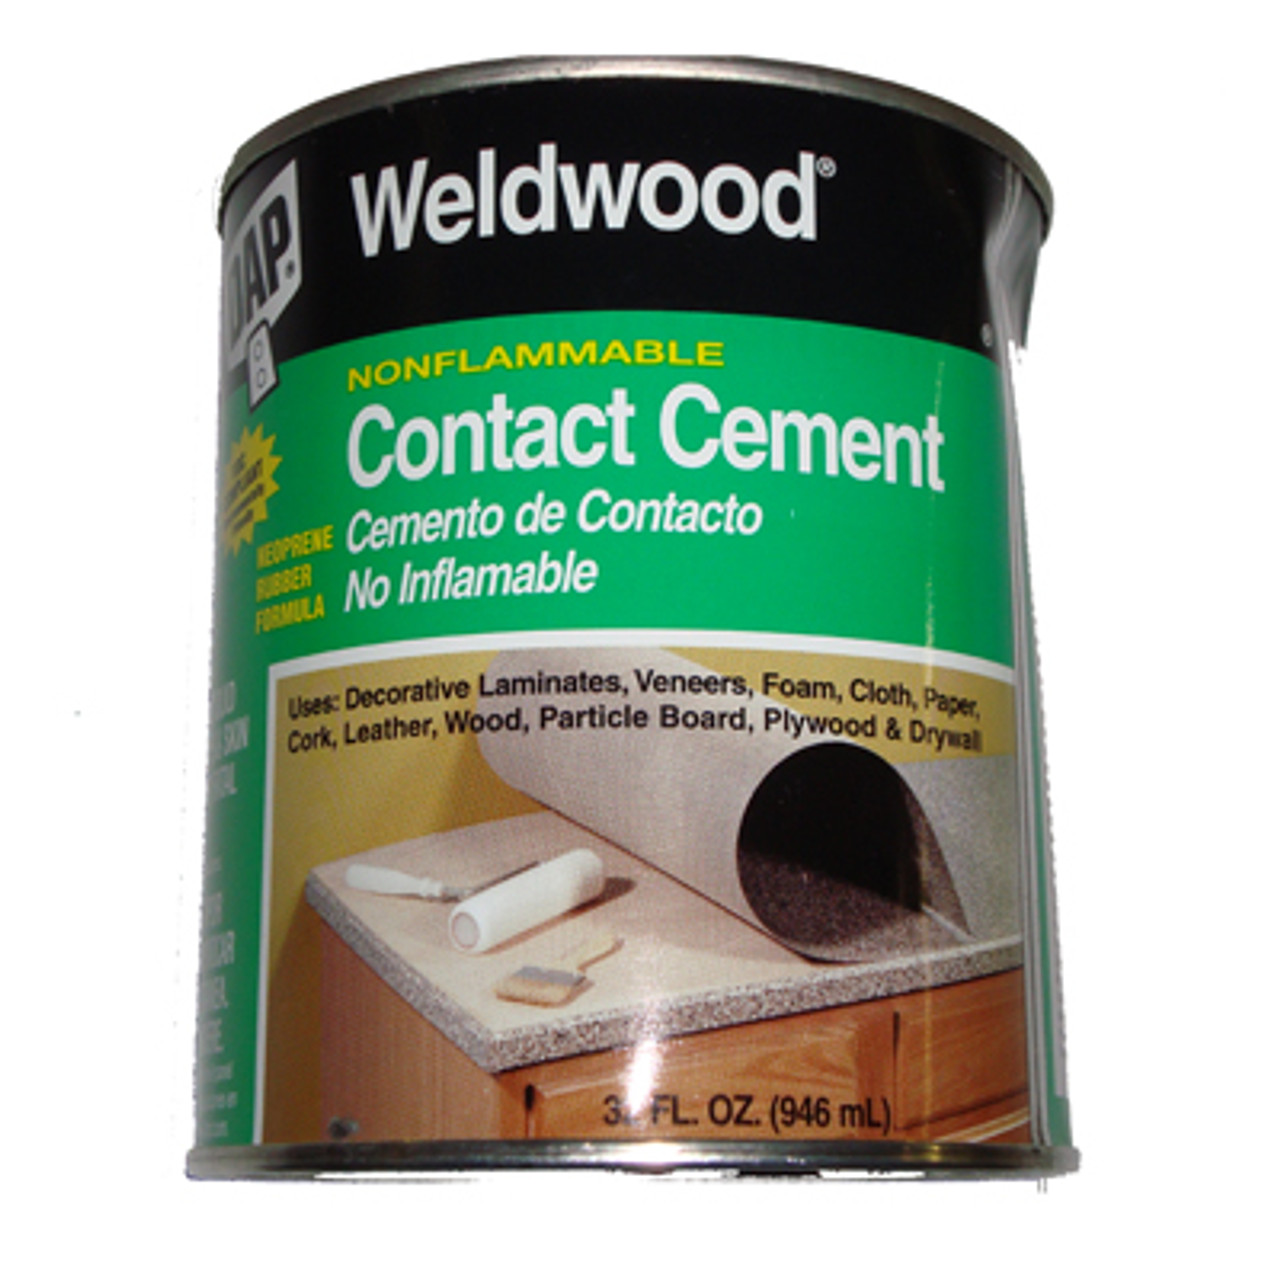 Dap Weldwood Original Contact Cement - Weldwood Non-Flammable - Quart -  Paxton/Patterson